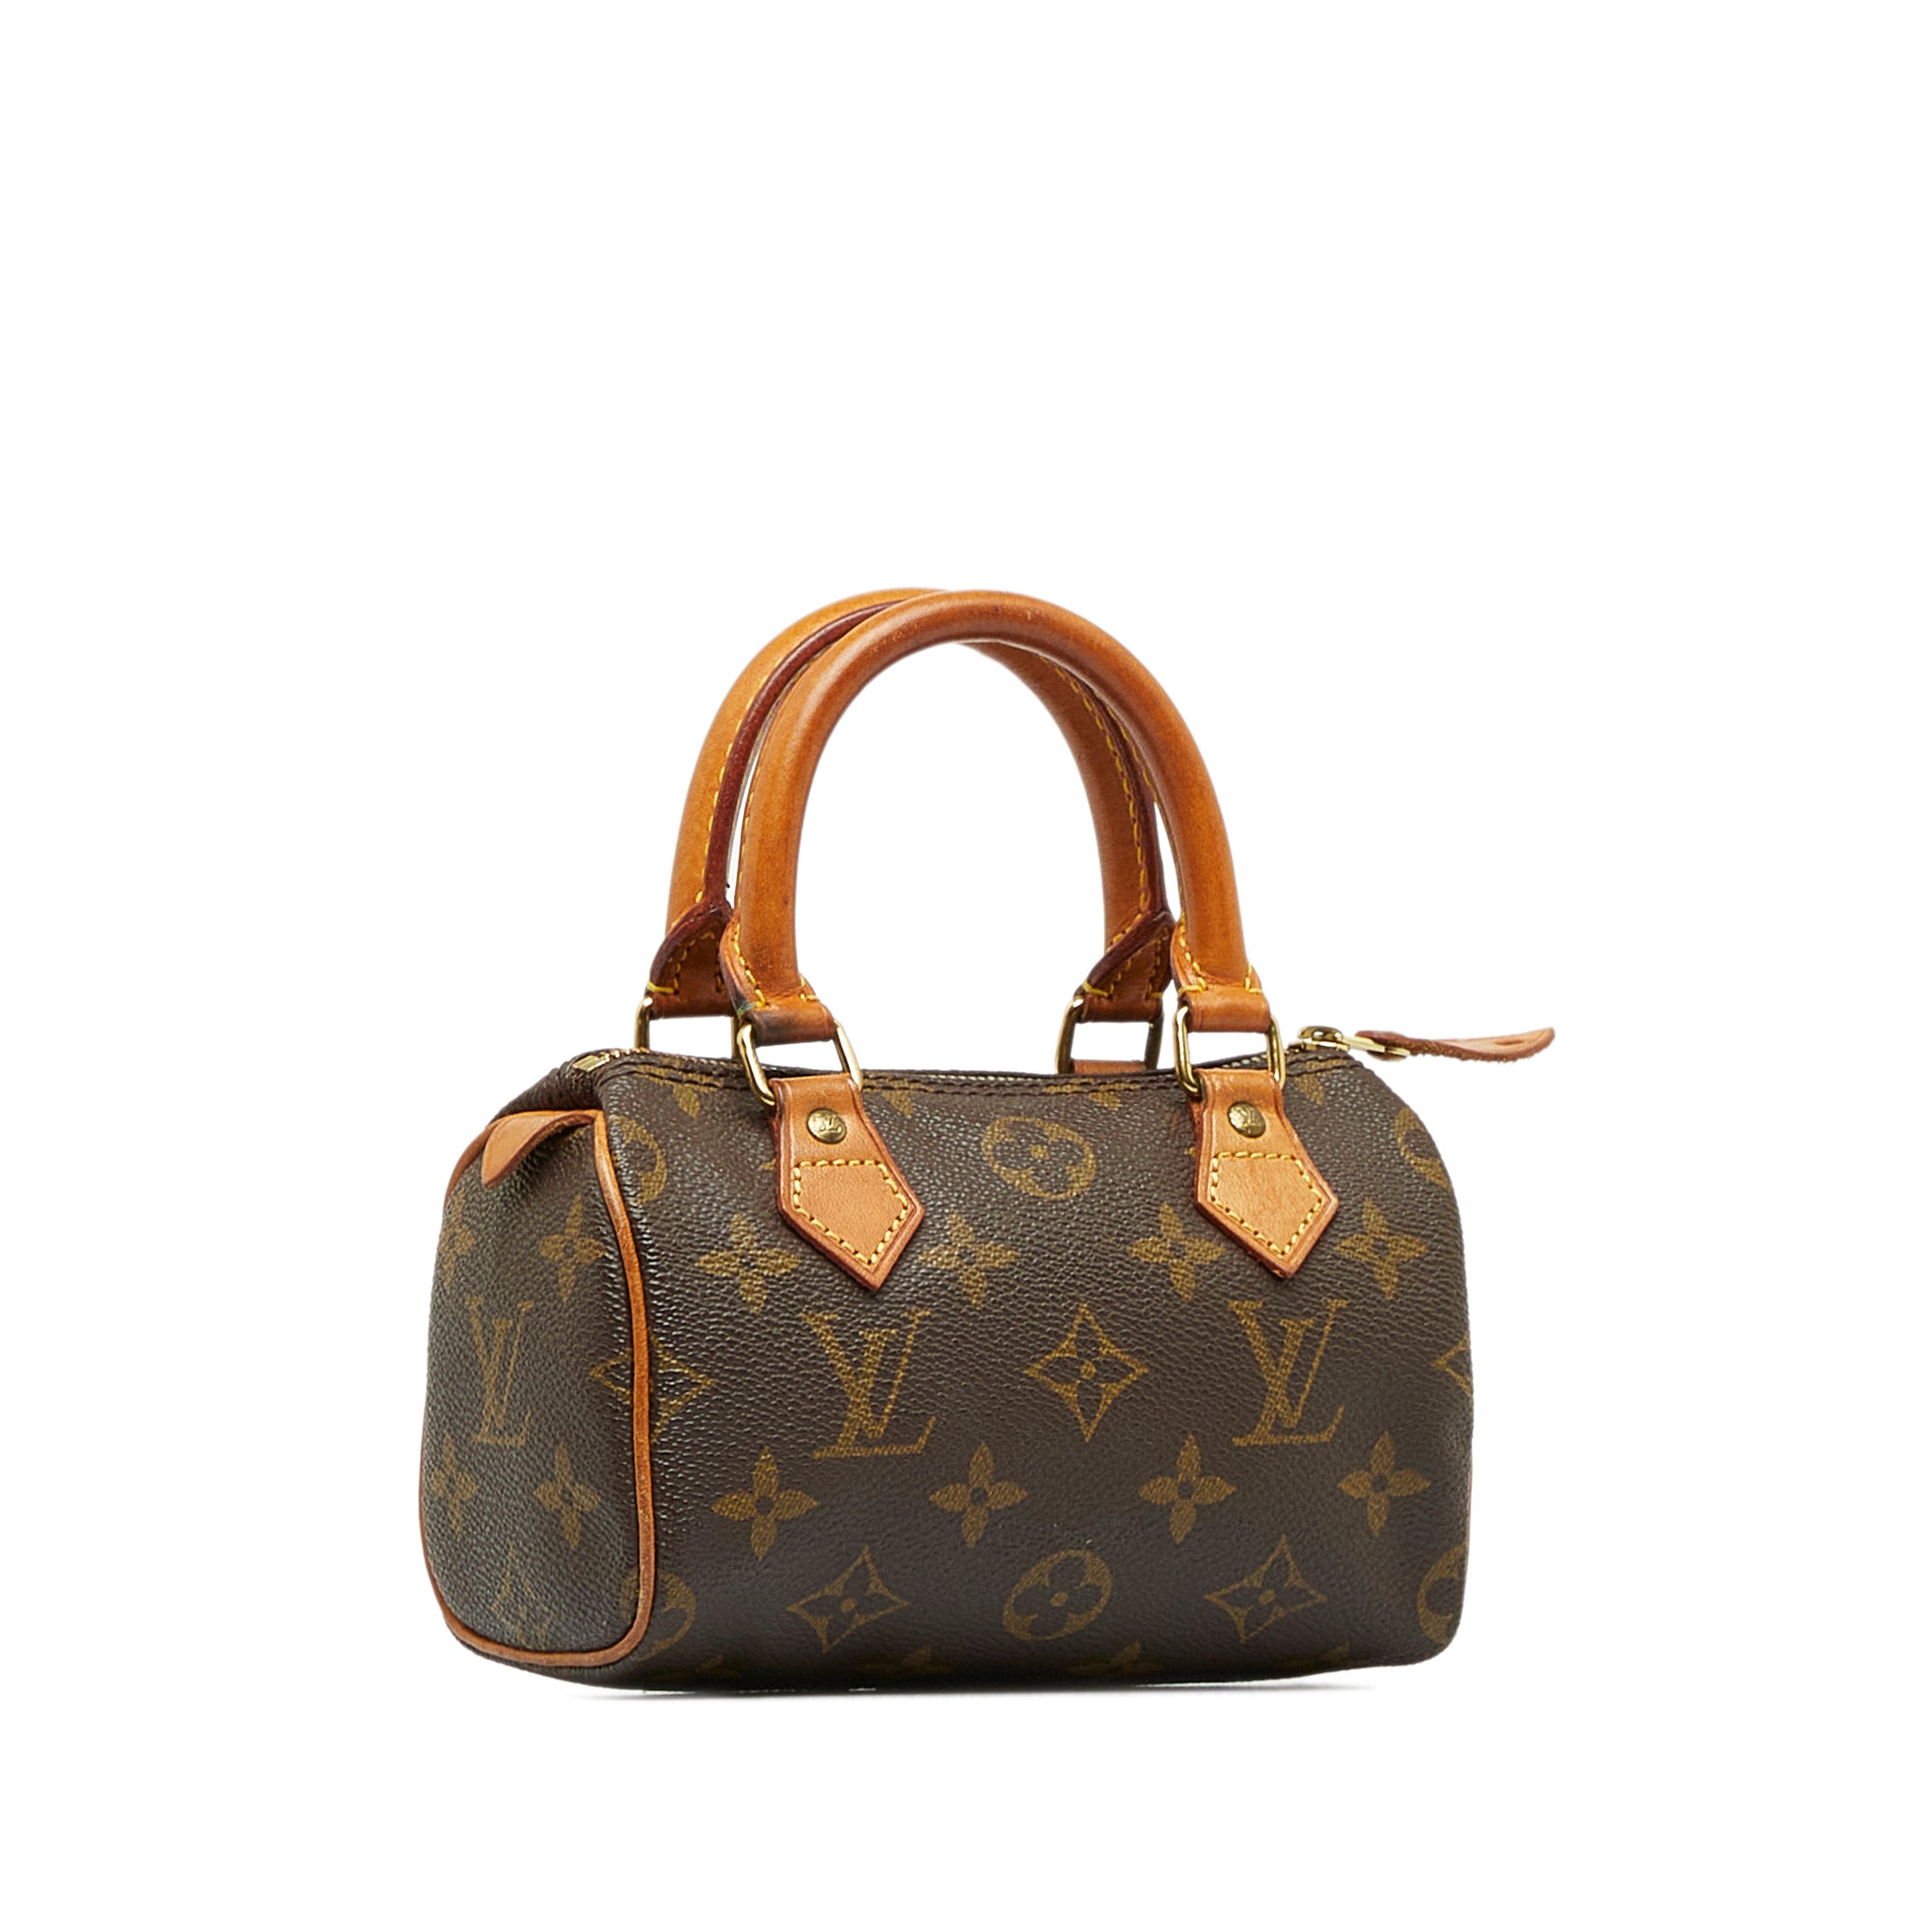 Louis Vuitton Mini Speedy HL Handbag